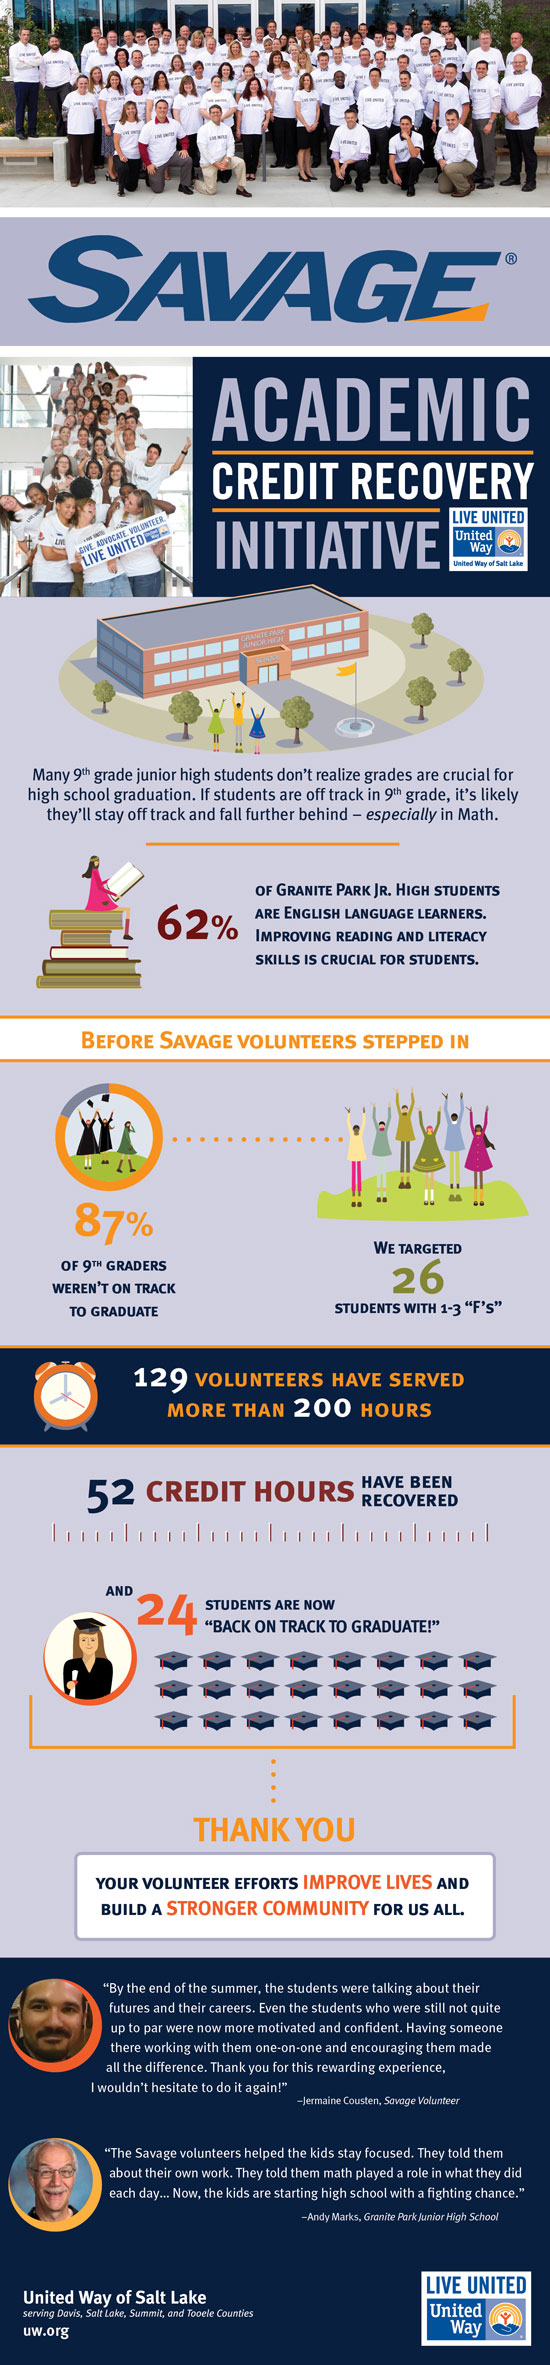 SAVAGE-infographic-AUG2014_vf